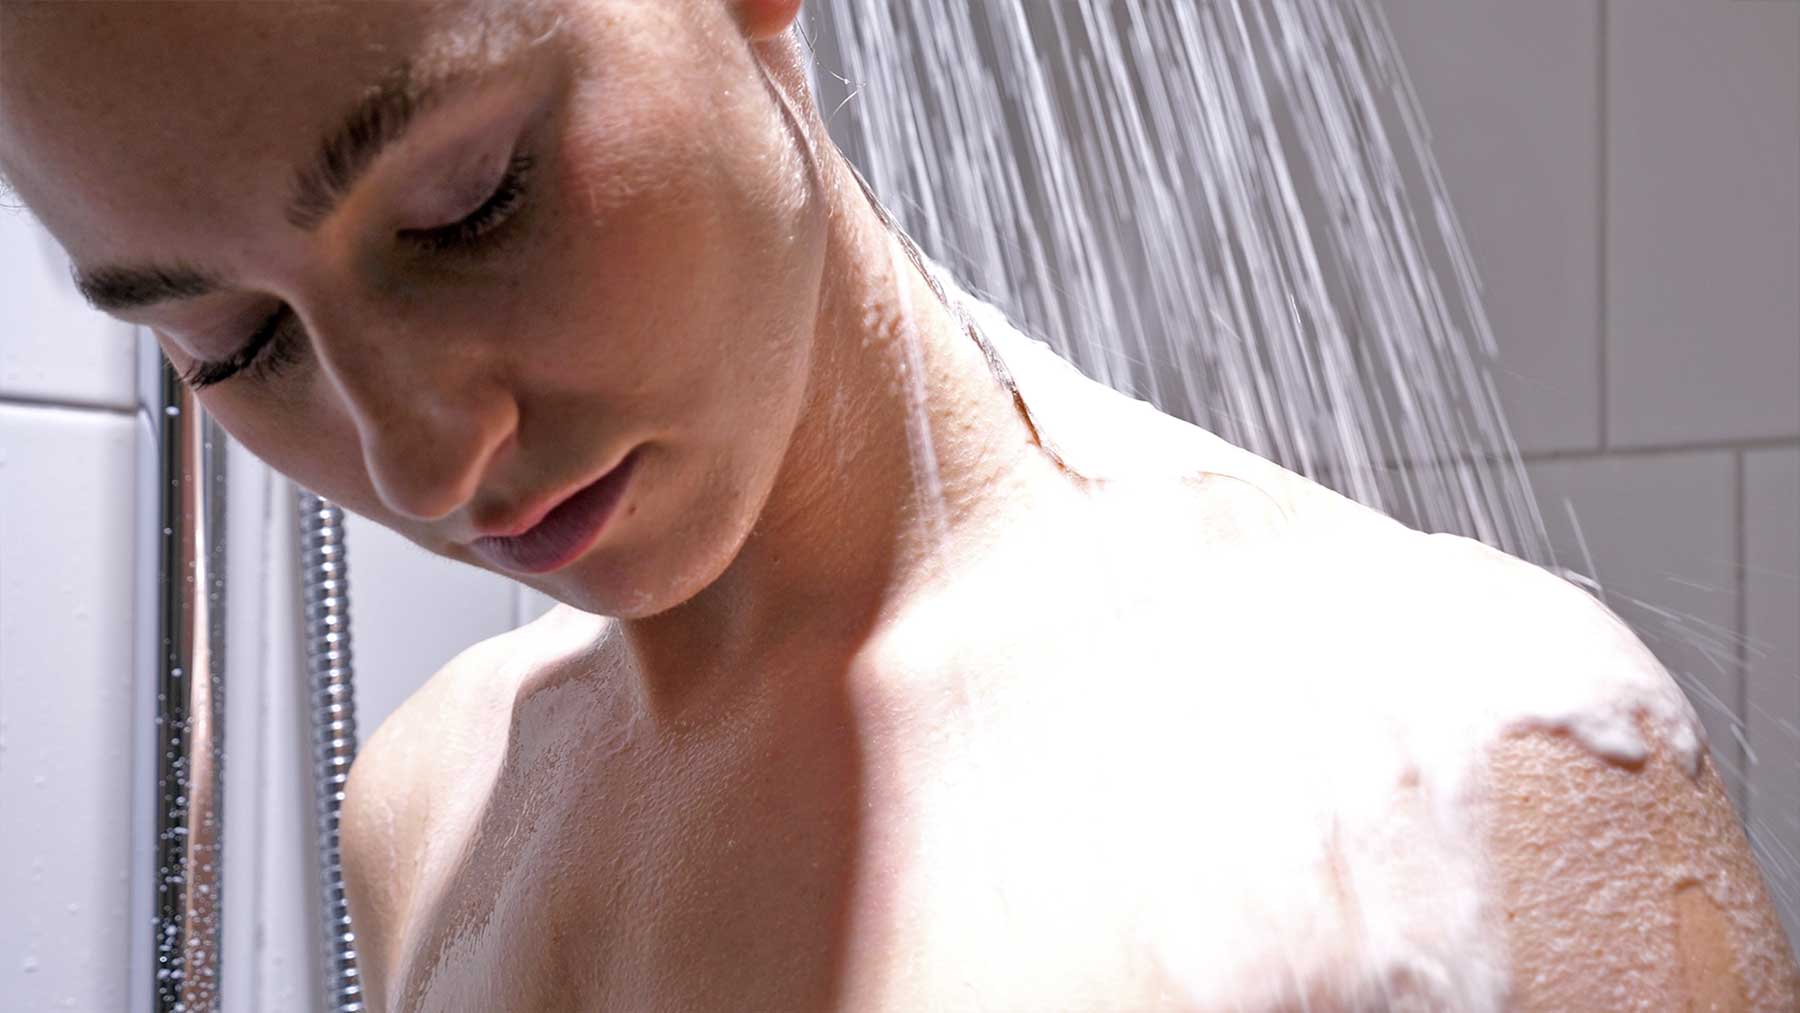 Shampoo beim Duschen direkt über die Brause ins Wasser geben showerspaah-shampoo-direkt-aus-brause-beim-duschen 